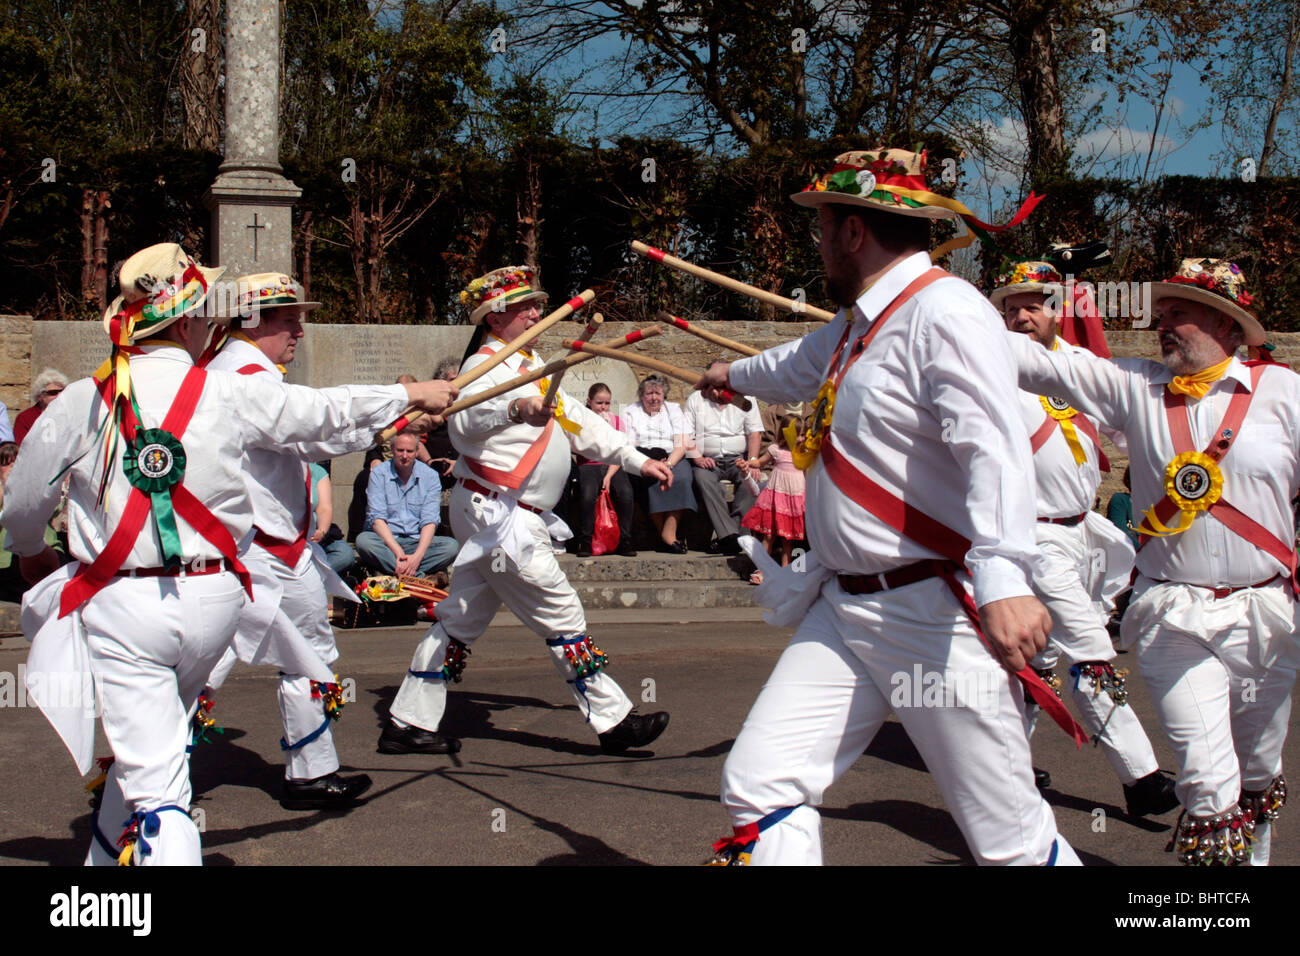 Un morris dance est une forme de danse folk anglais habituellement accompagnés de musique. Banque D'Images